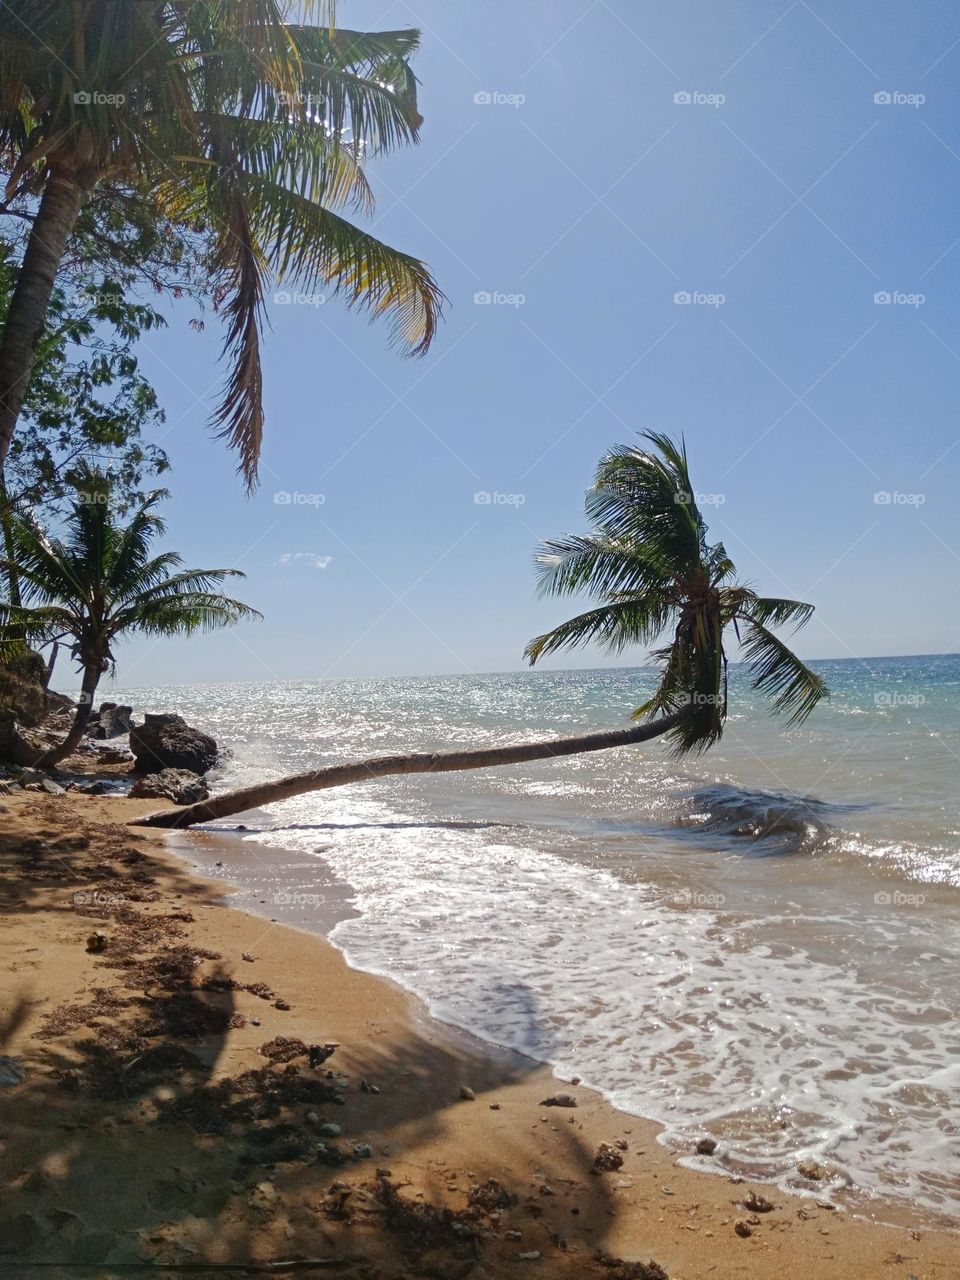 Bended coconut tree at Wataboo beach in Baucau